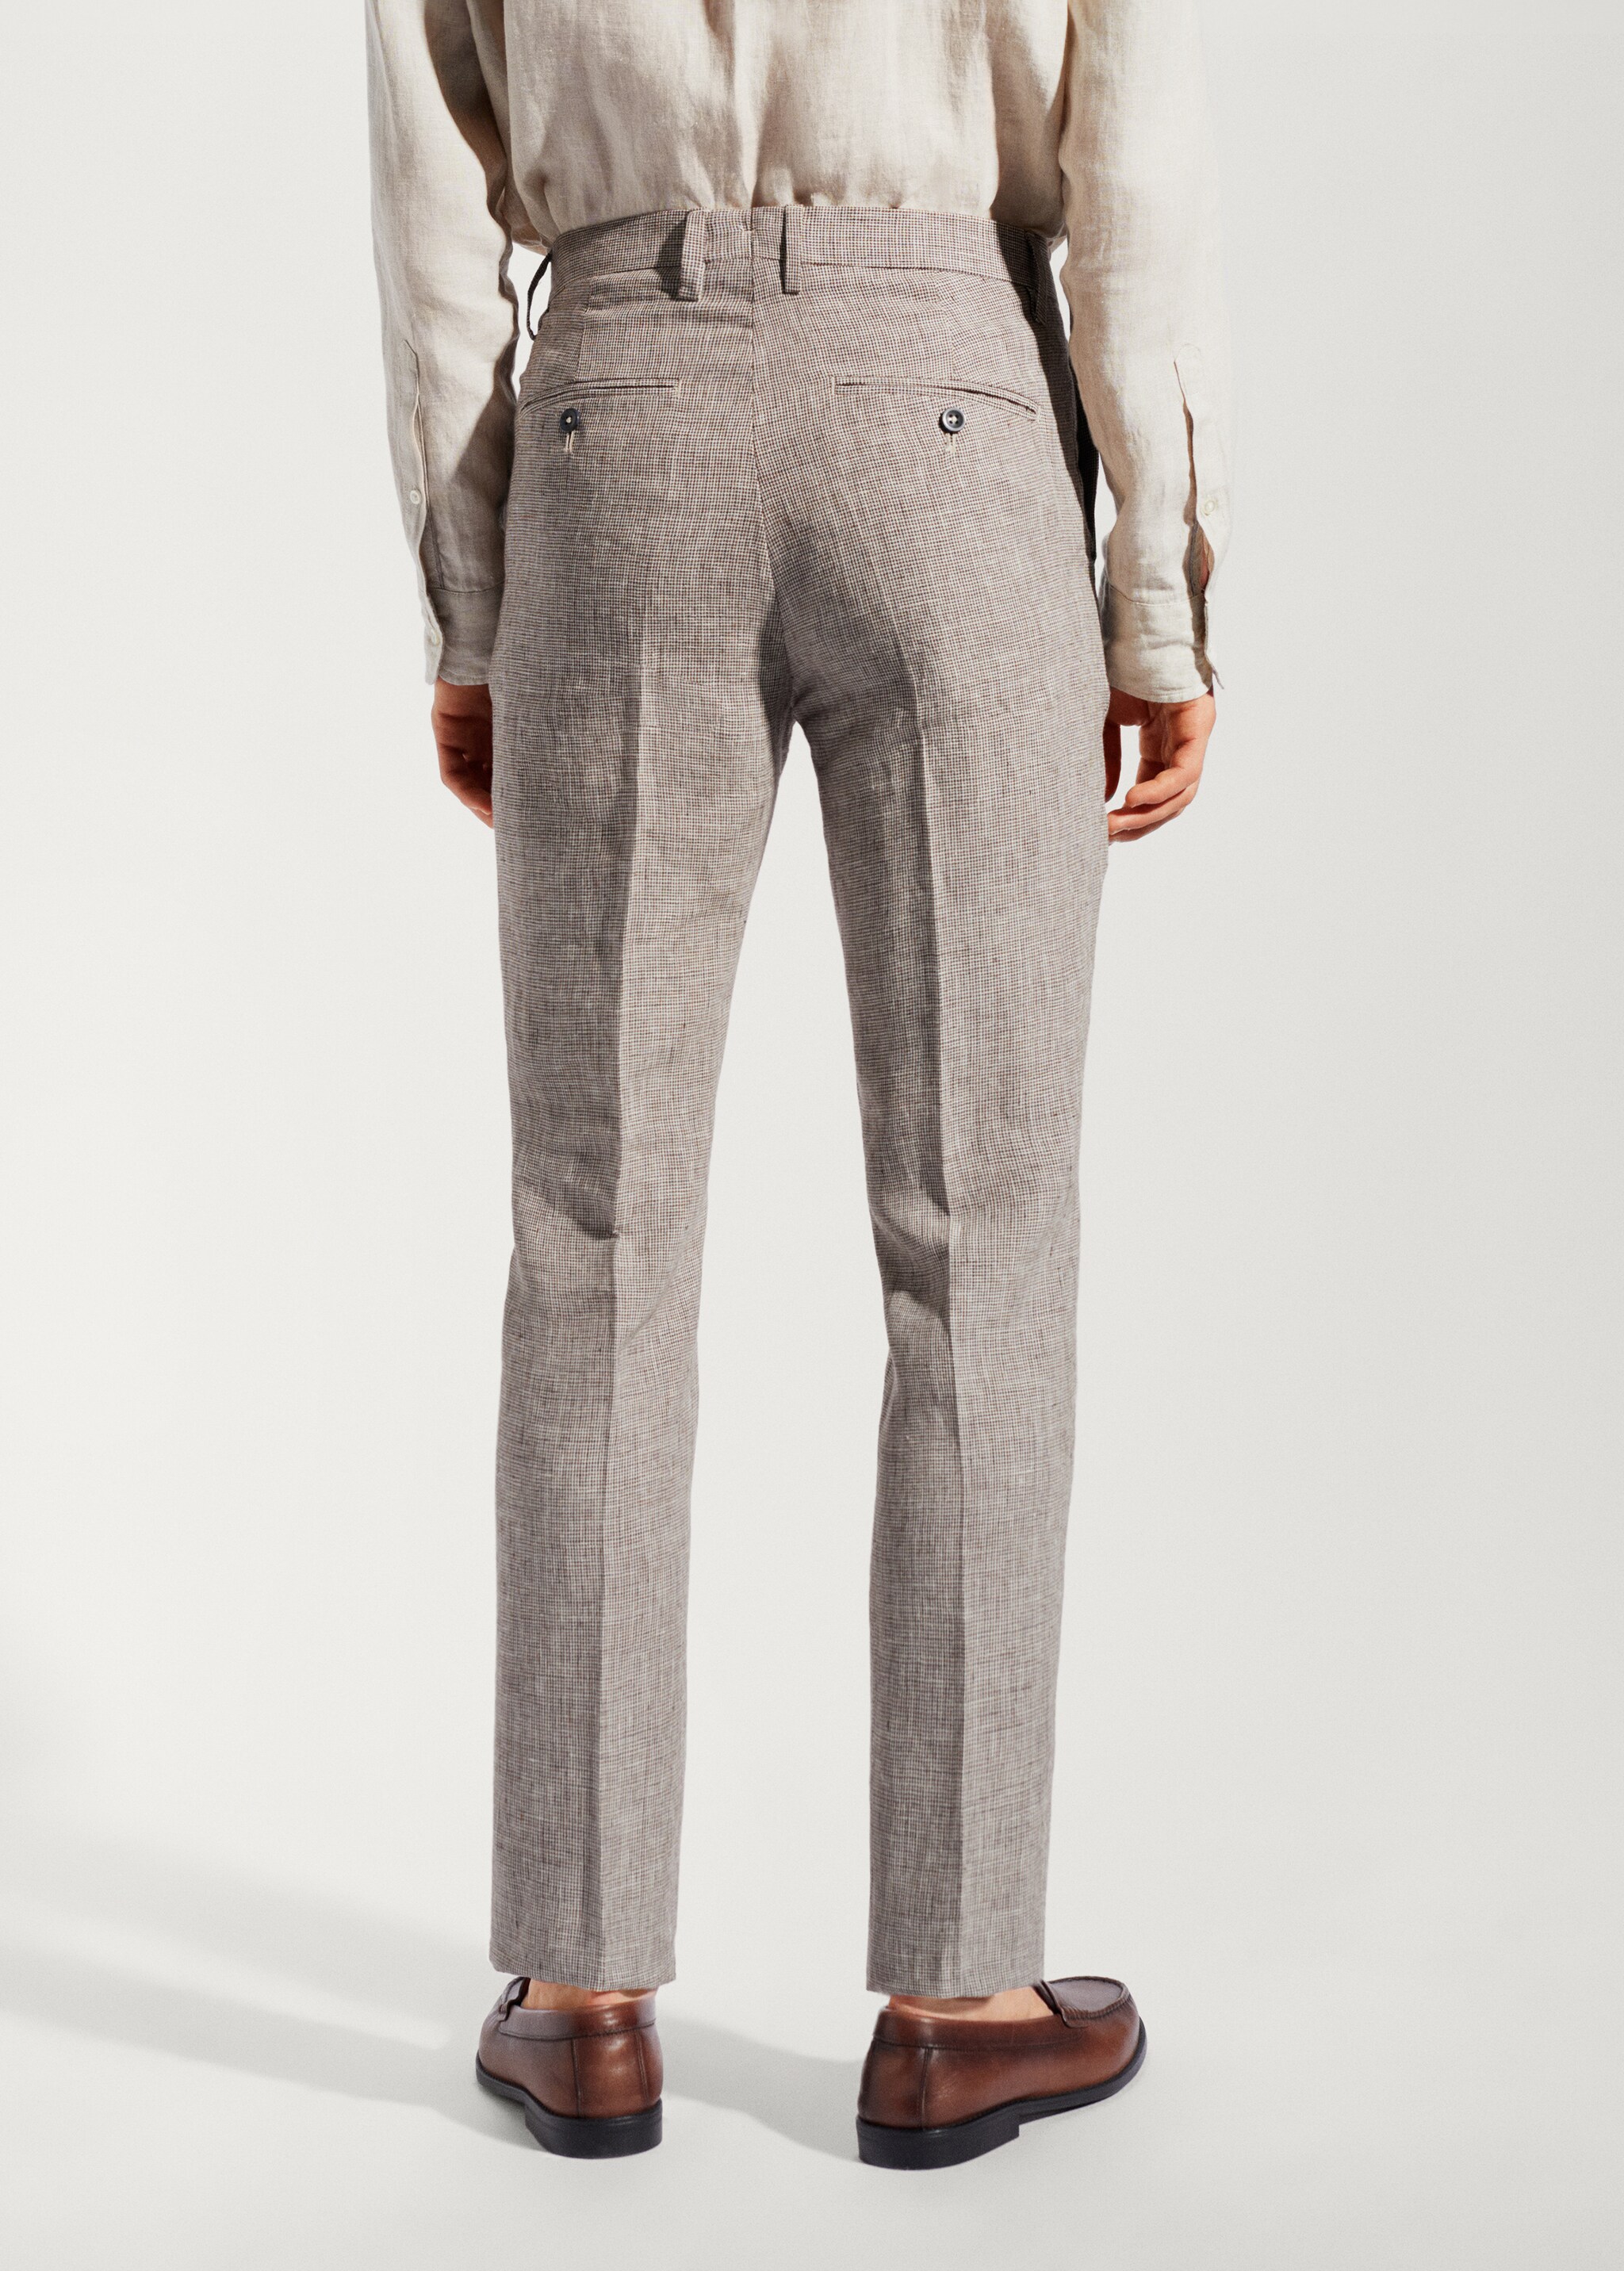 Pantalón traje 100% lino - Reverso del artículo